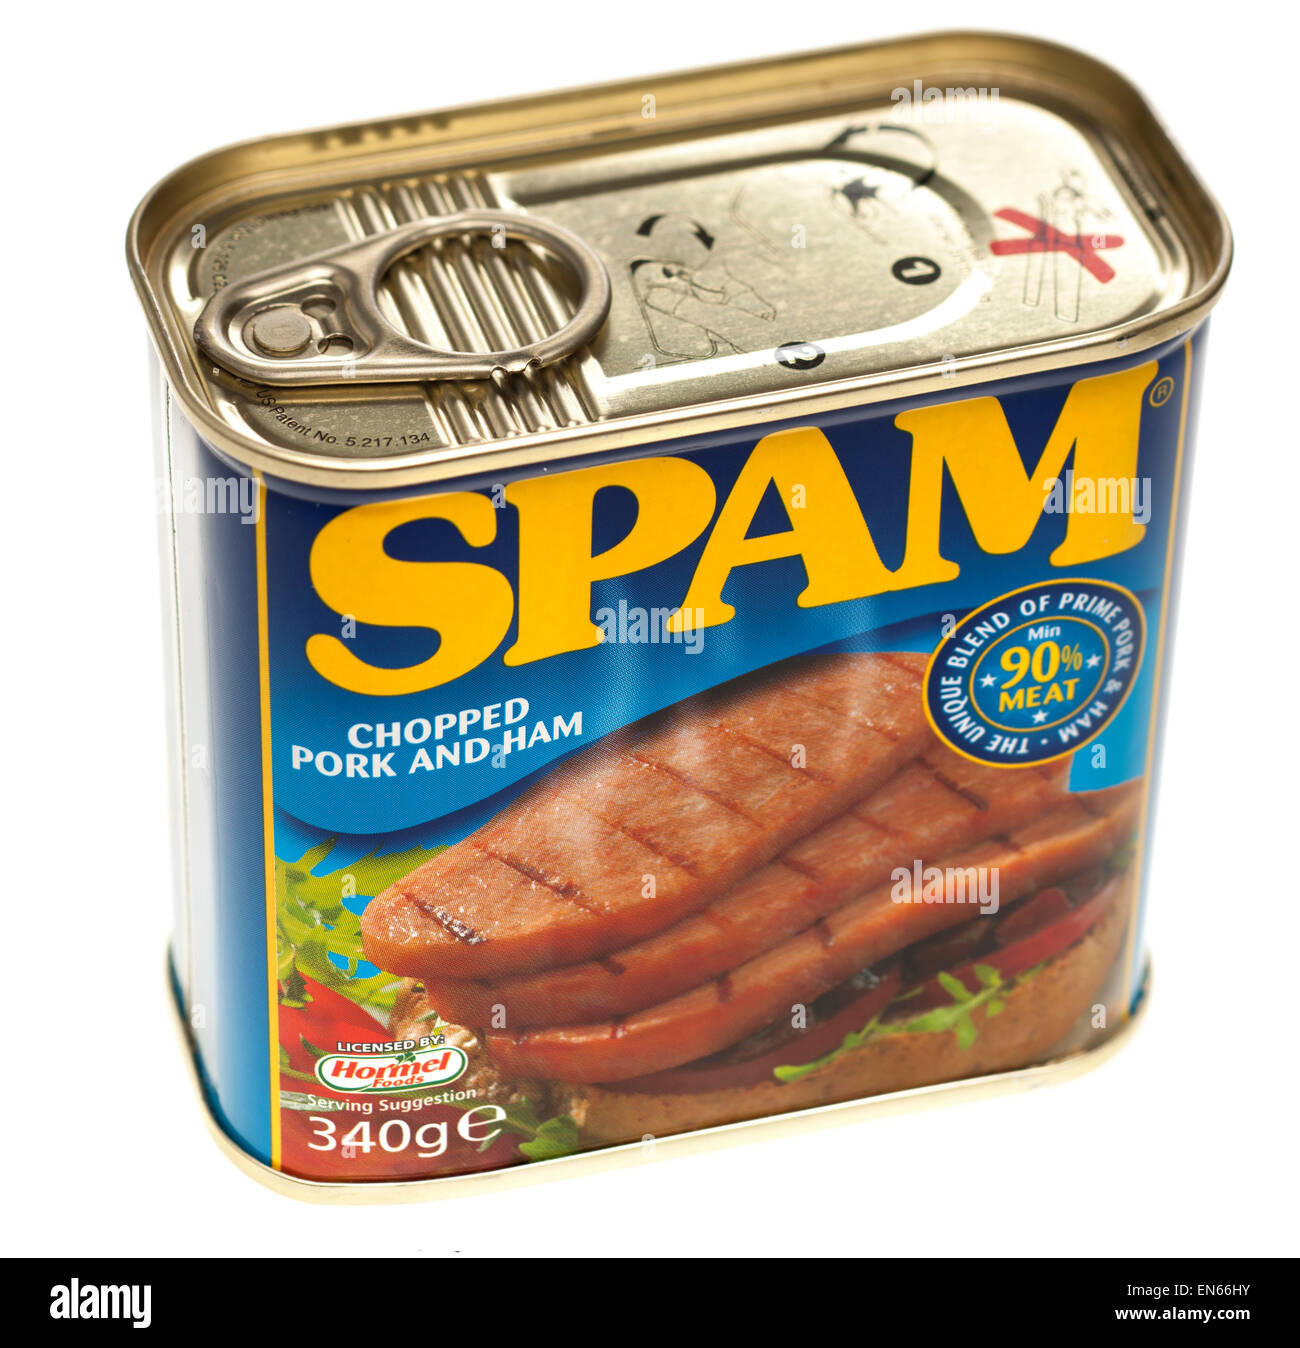 340g Dose Spam verzinnt gehackt Schweinefleisch und Schinken 90 Prozent Fleisch lizenziert durch Hormel foods Stockfoto